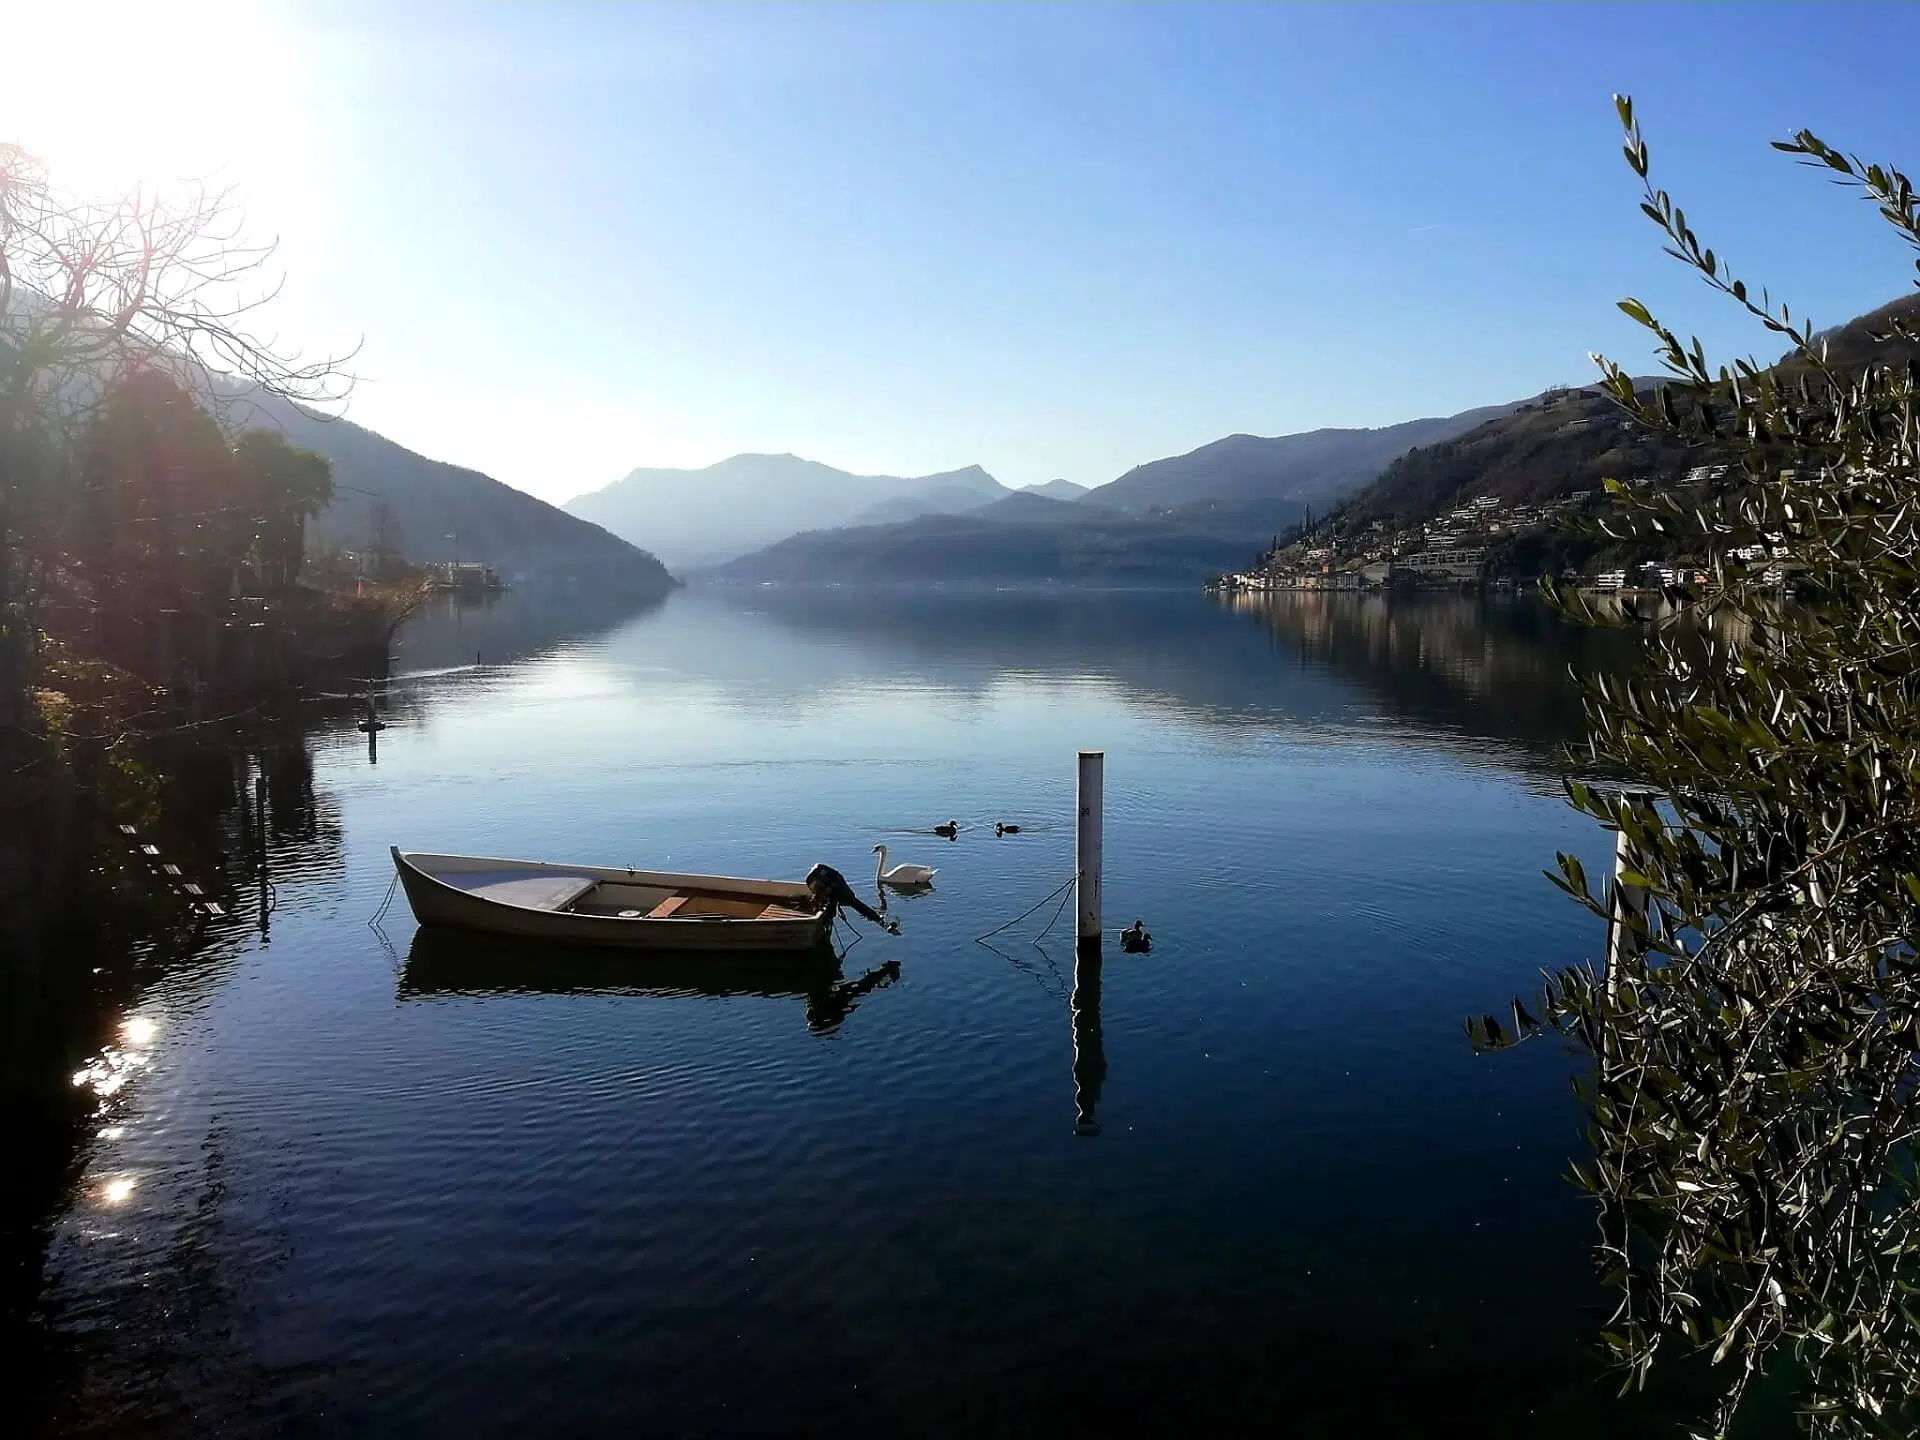 Dolceresio Lugano Lake B&B, Brusino Arsizio - À propos de nous - 12 gennaio 2020 2